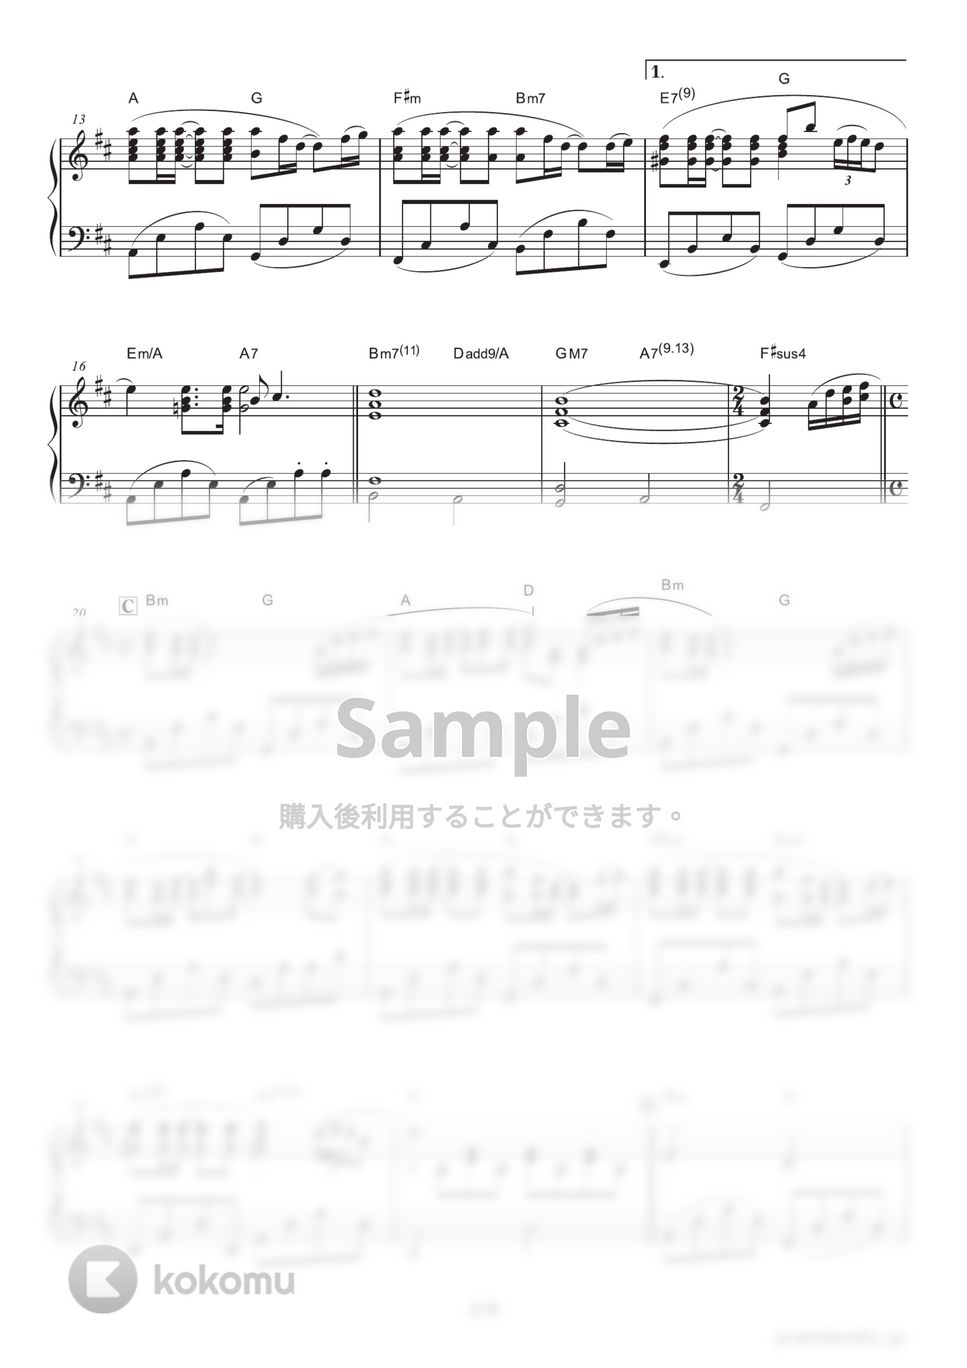 久石譲 - Summer (映画『菊次郎の夏』メインテーマ) by ピアノの本棚